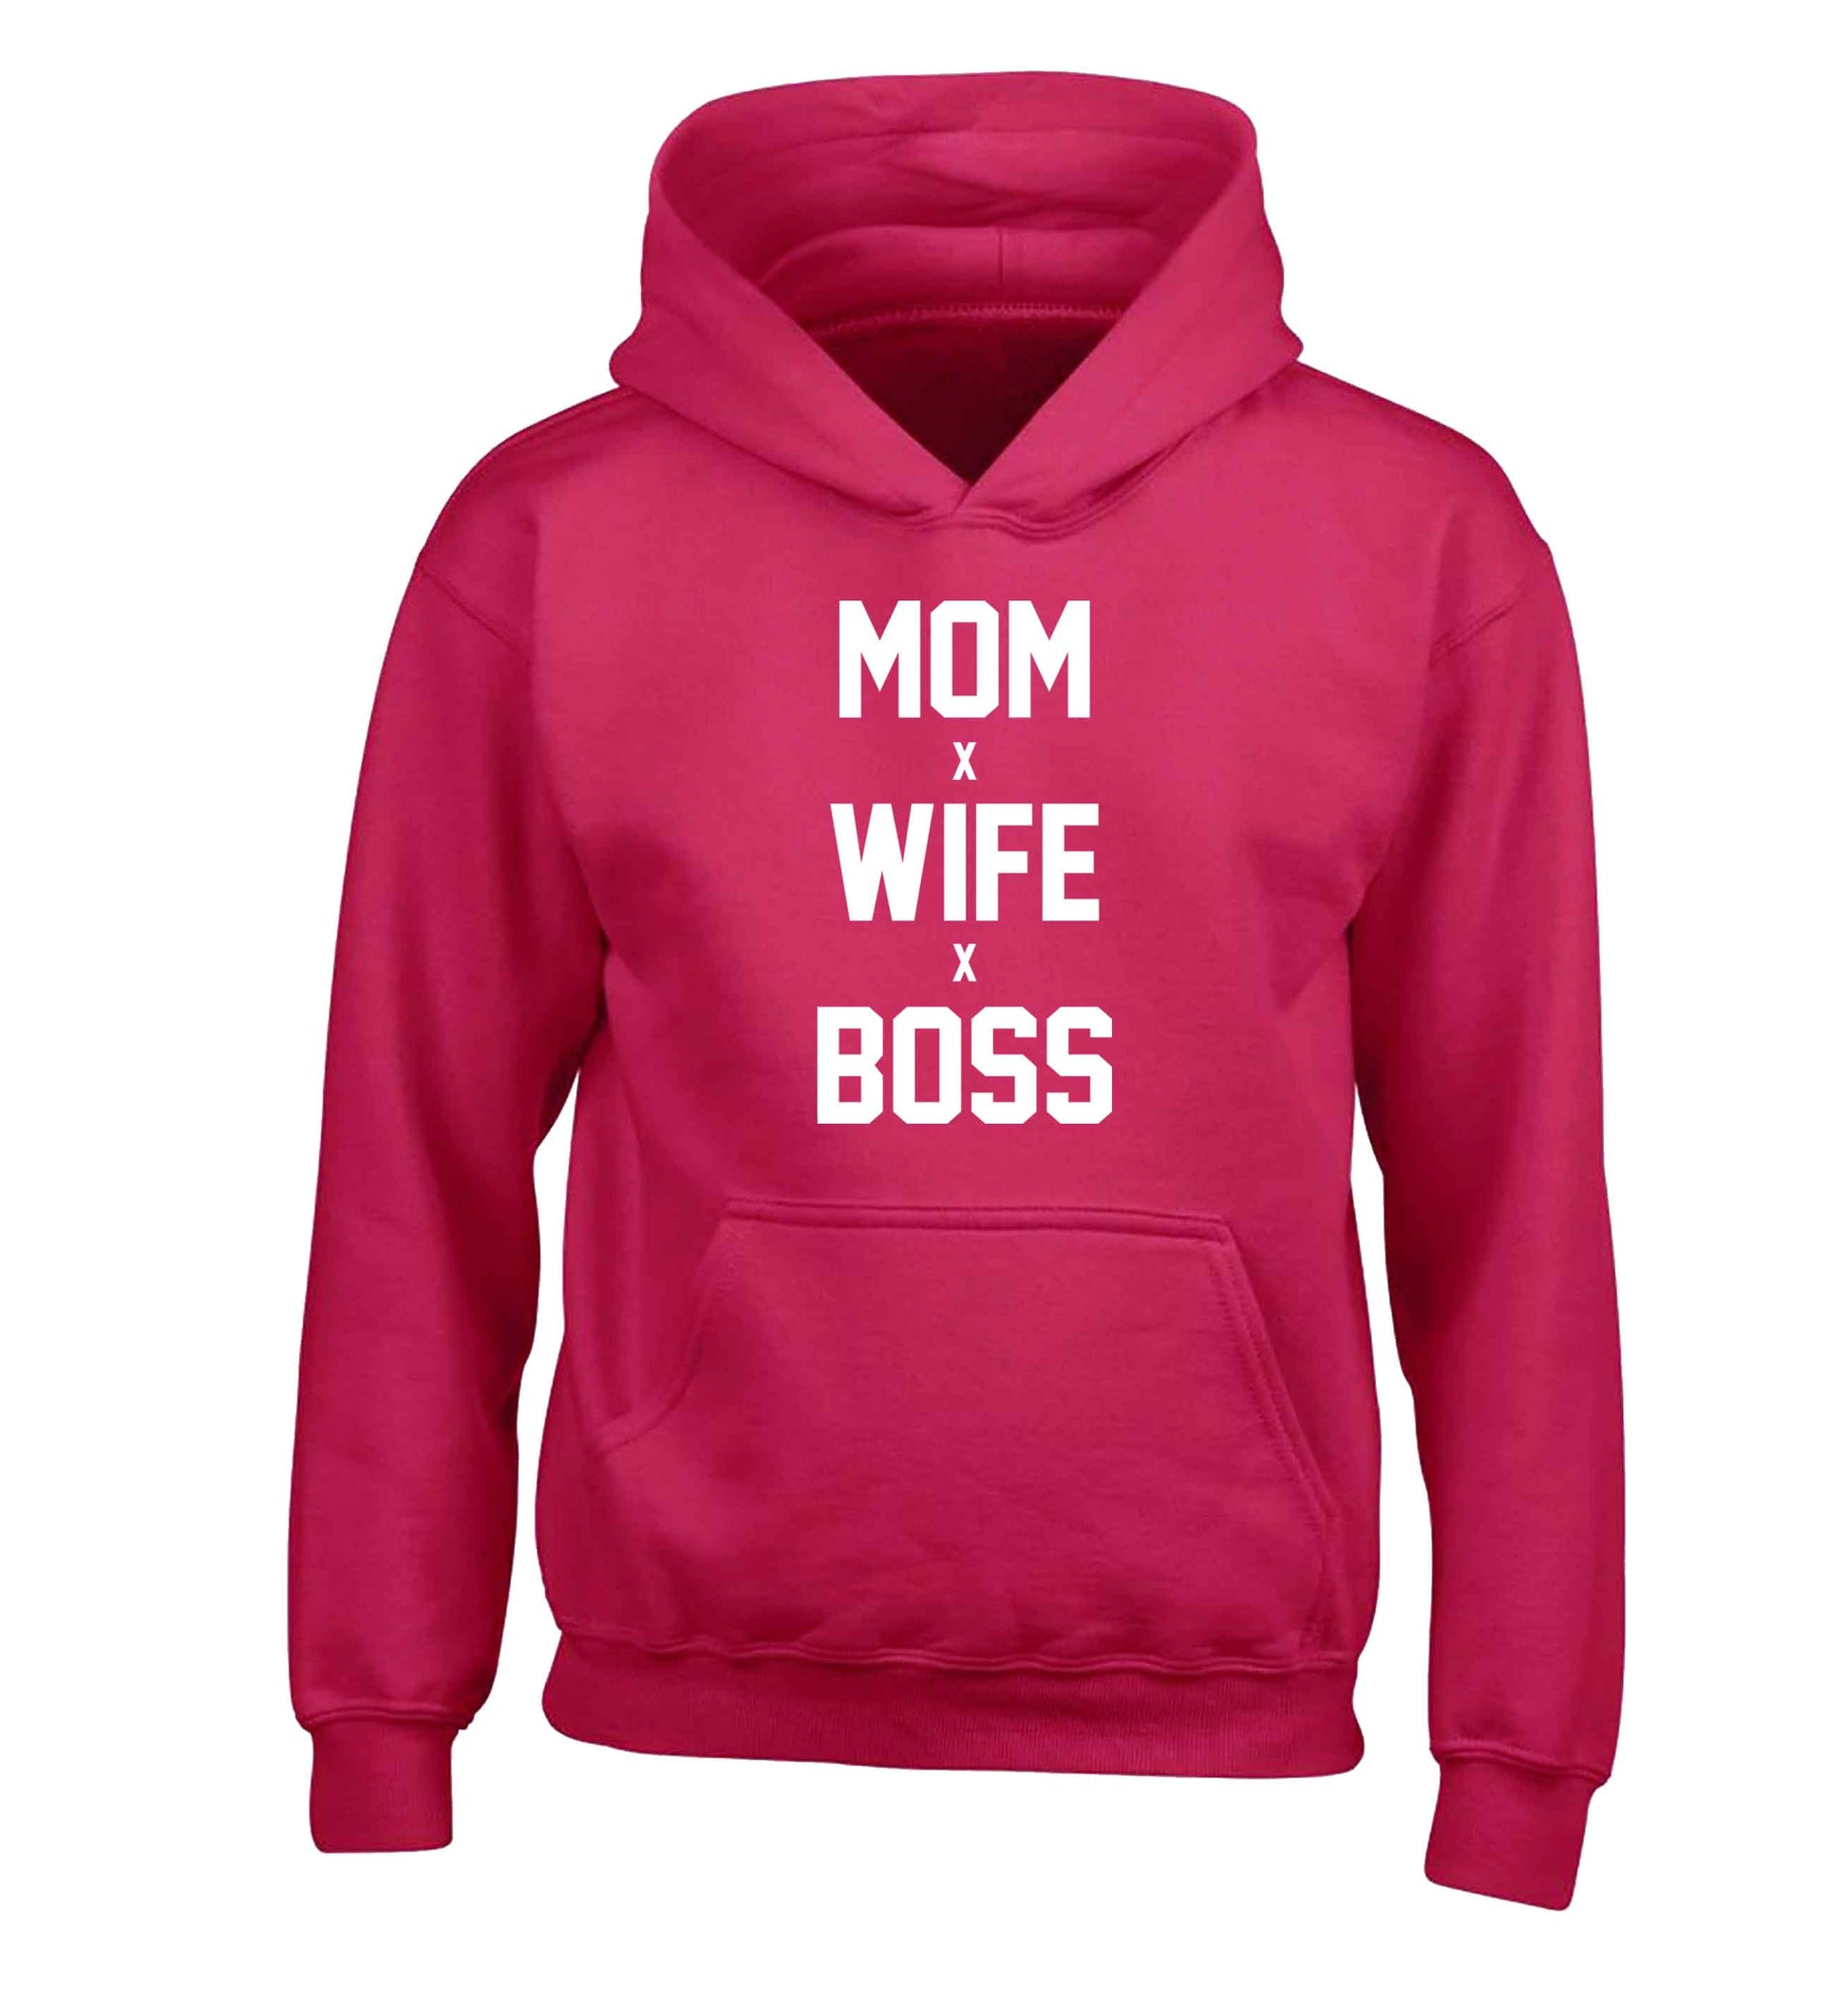 Mum wife boss children's pink hoodie 12-13 Years